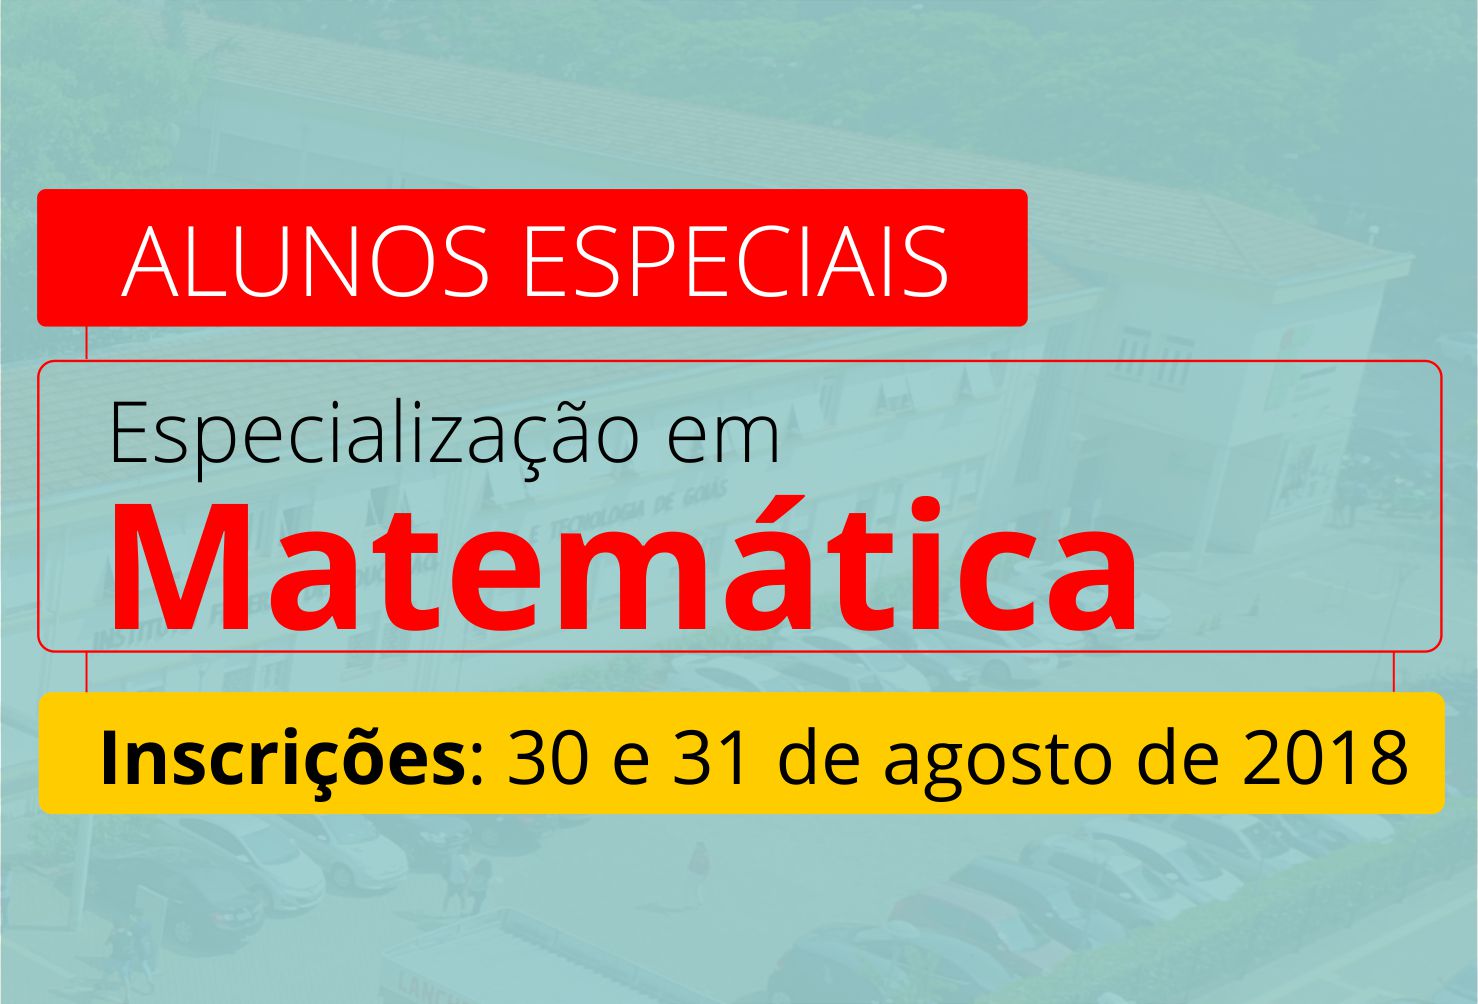 Banner de divulgação da seleção para alunos especiais para a especialização em Matemática